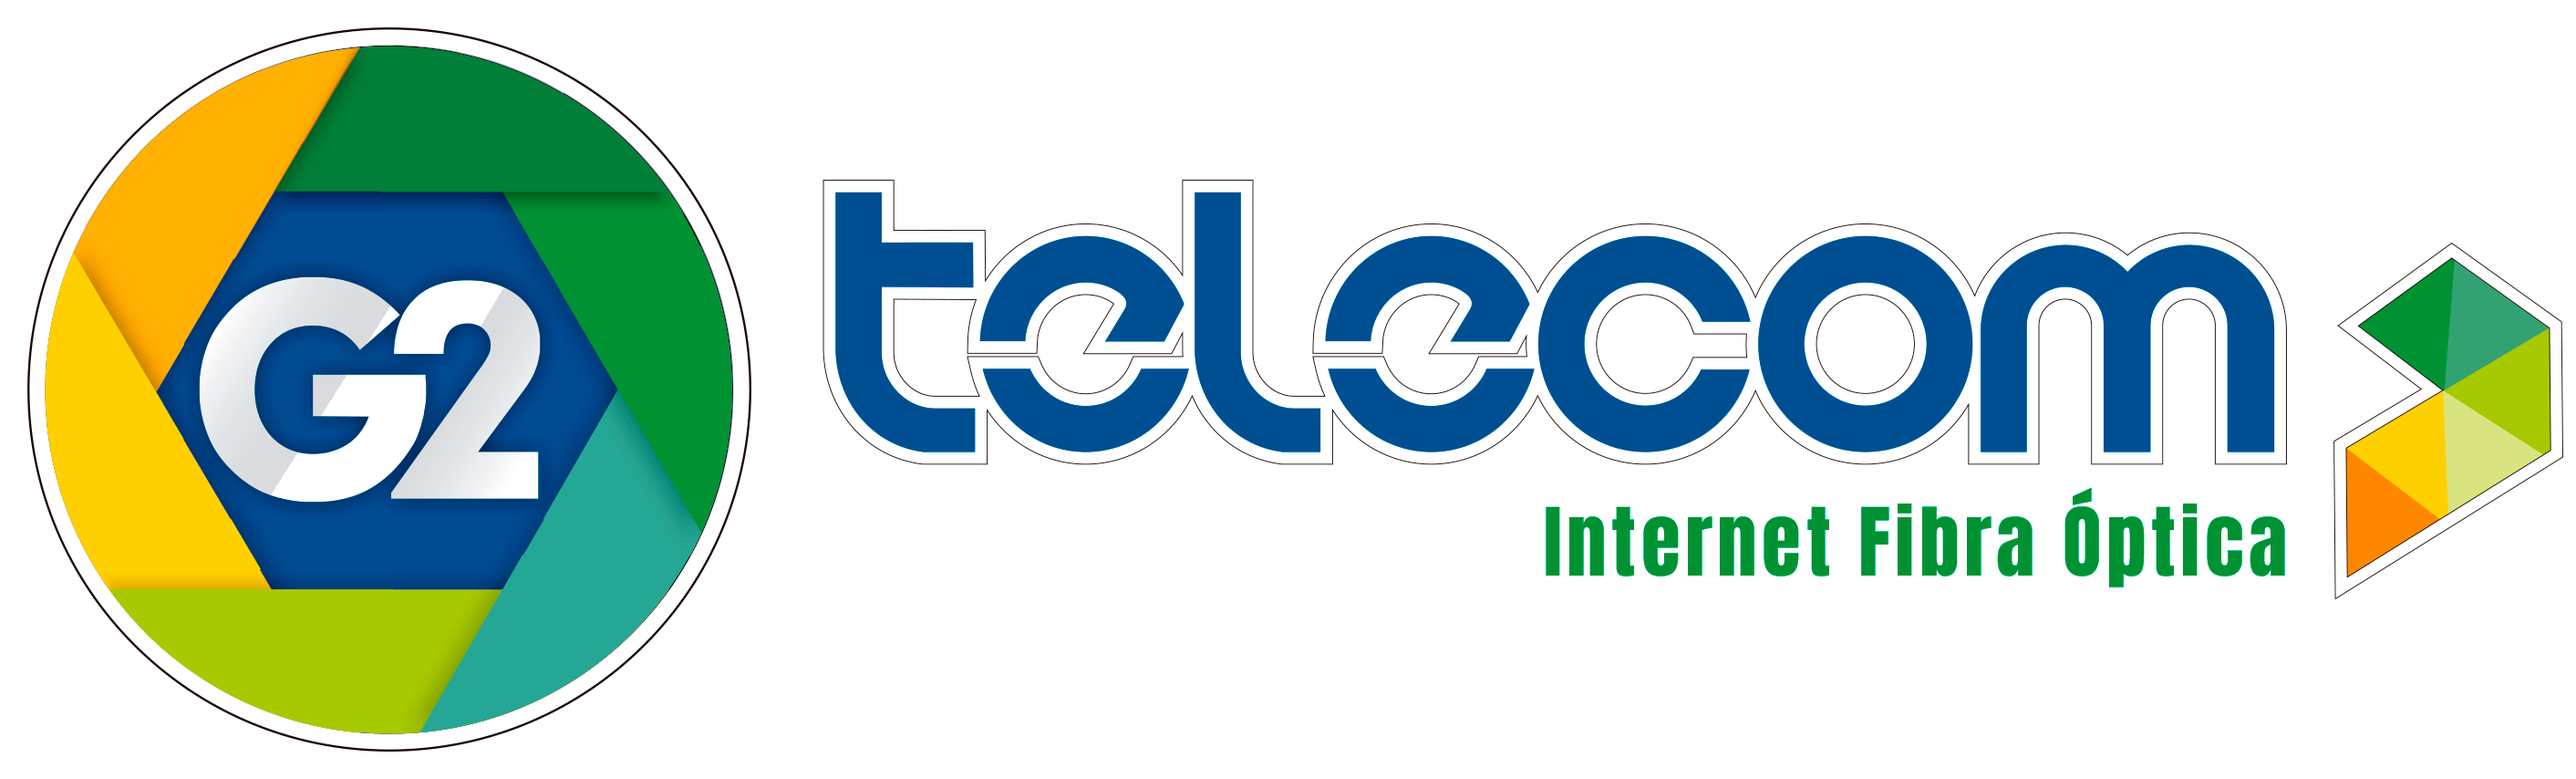 G2Telecom